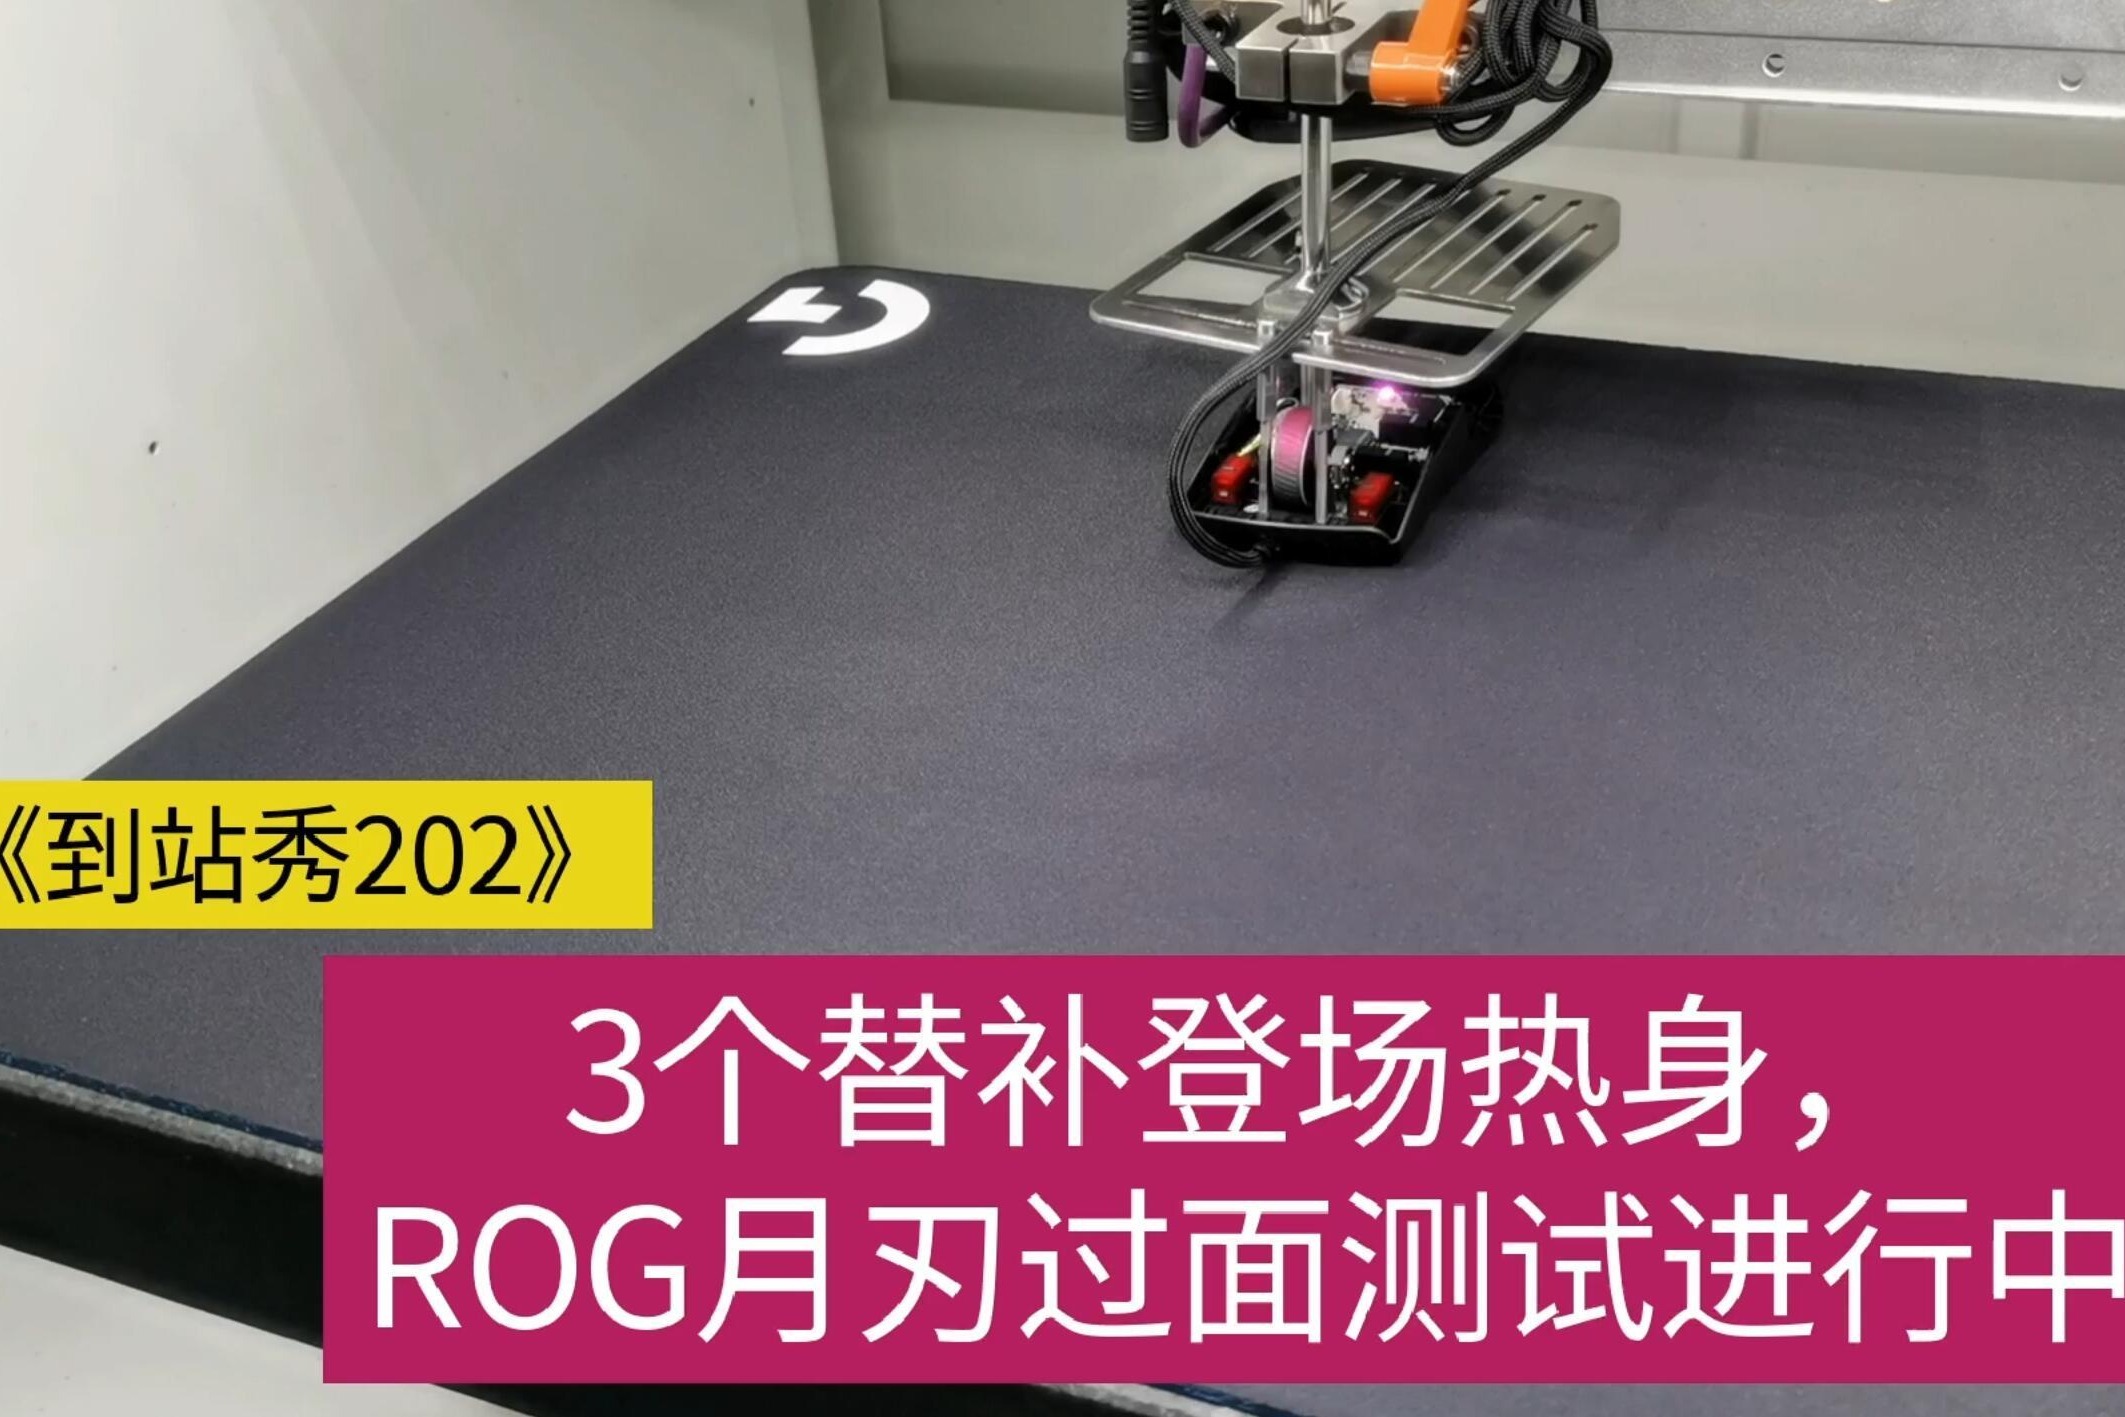 ROG 月刃 2 ACE 游戏鼠标即将上市：DPI 达 42000， 重 55g